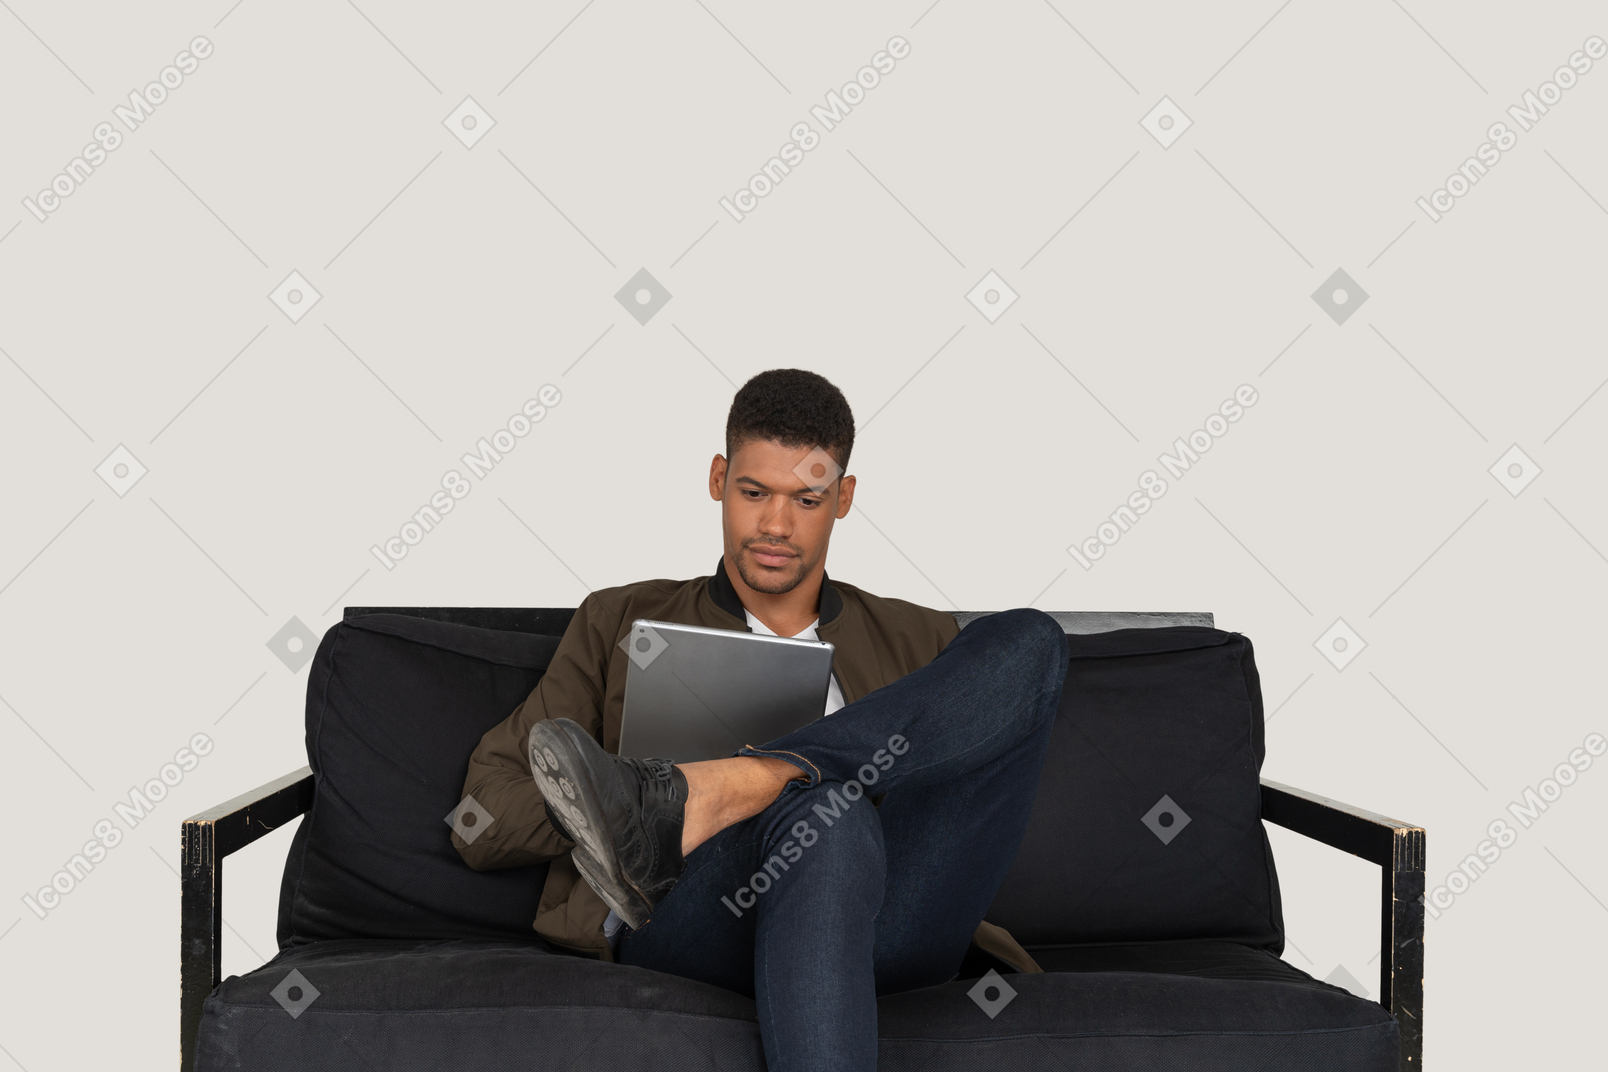 Vue de face d'un jeune homme assis sur un canapé tout en tenant une tablette